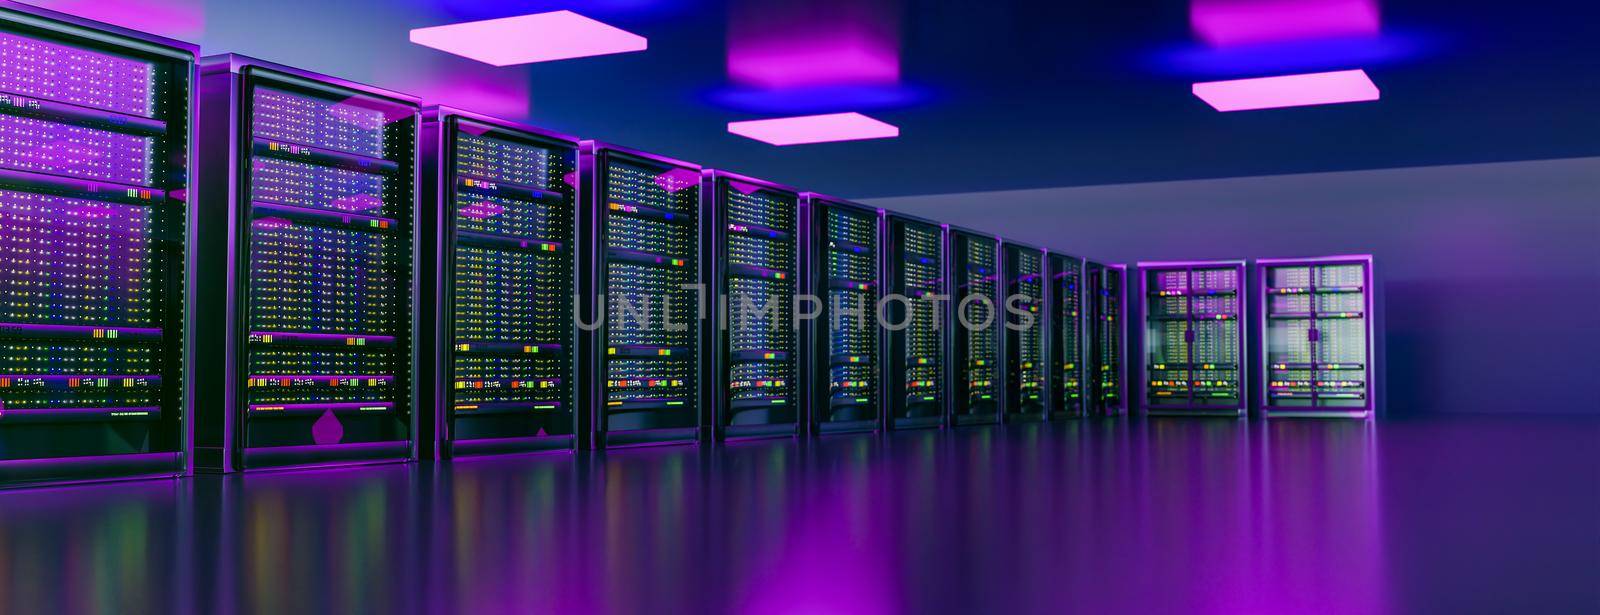 Servers. Server racks in server room cloud data center. Datacenter hardware cluster. Backup, hosting, mainframe, mining, farm and computer rack with storage information. 3D rendering. 3D illustration